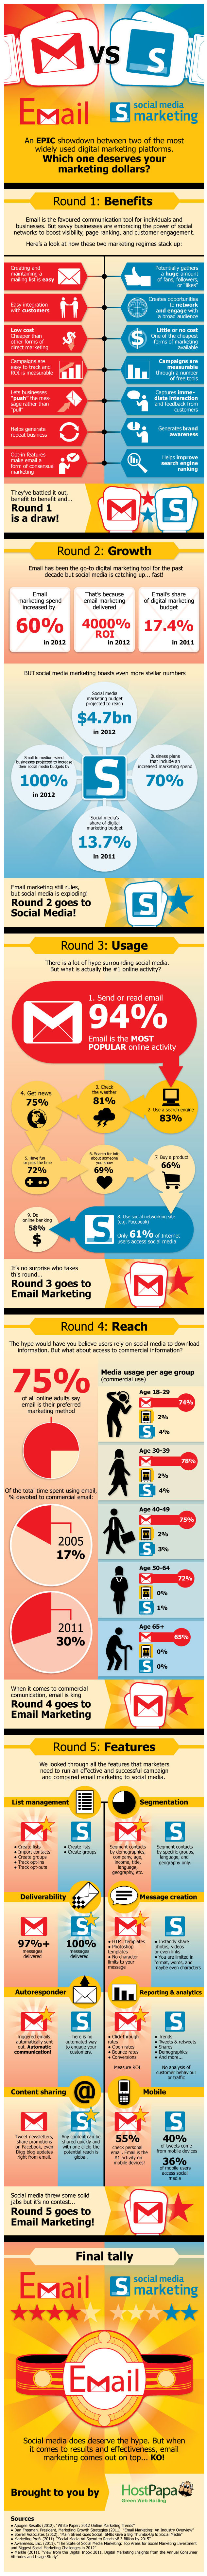 Email vs Social media